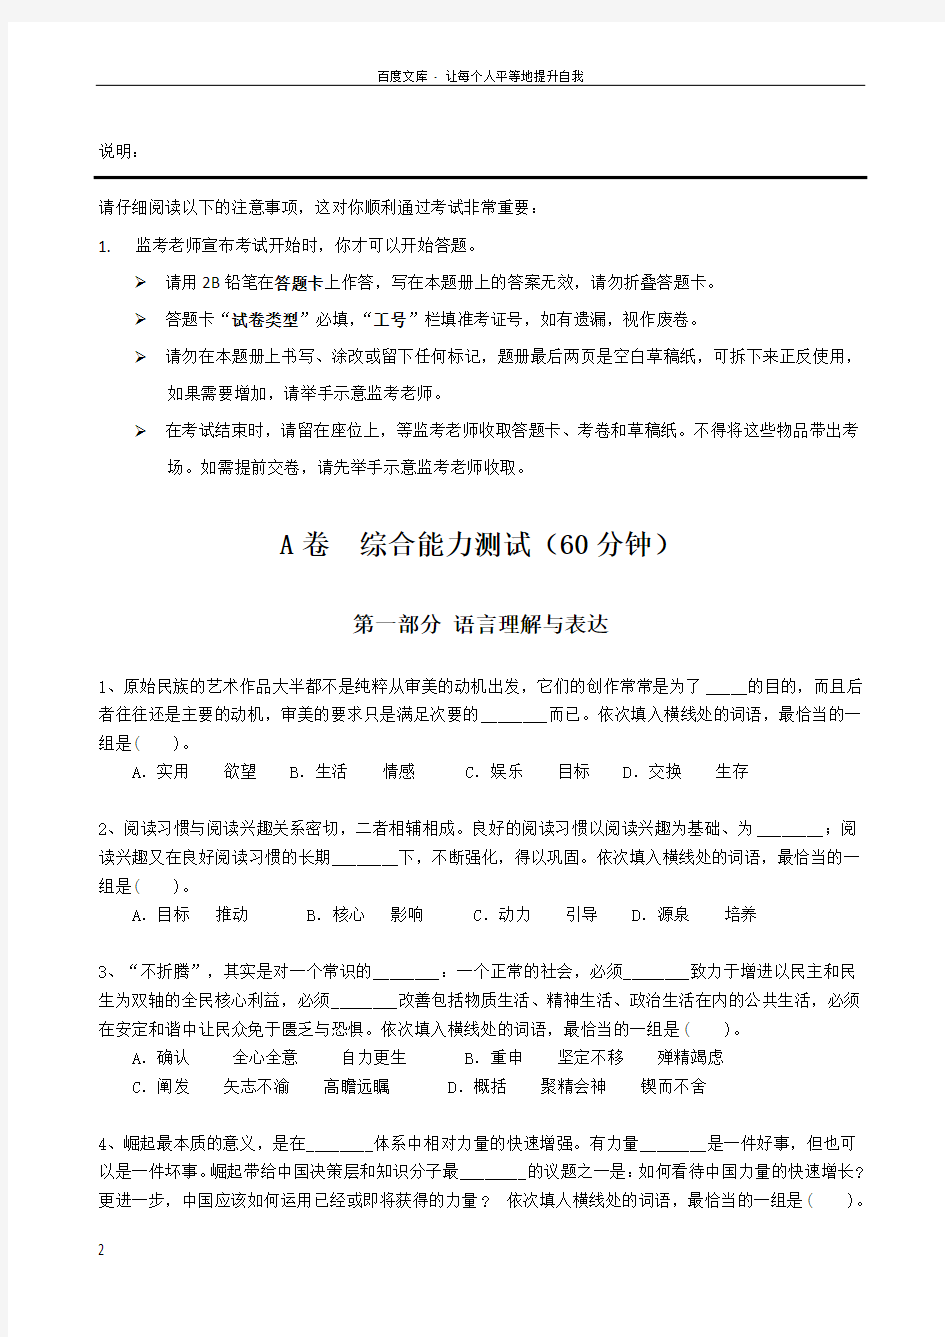 中国人寿招聘考试最新全真模拟笔试试题(EPI综合能力测试卷)和答案解析